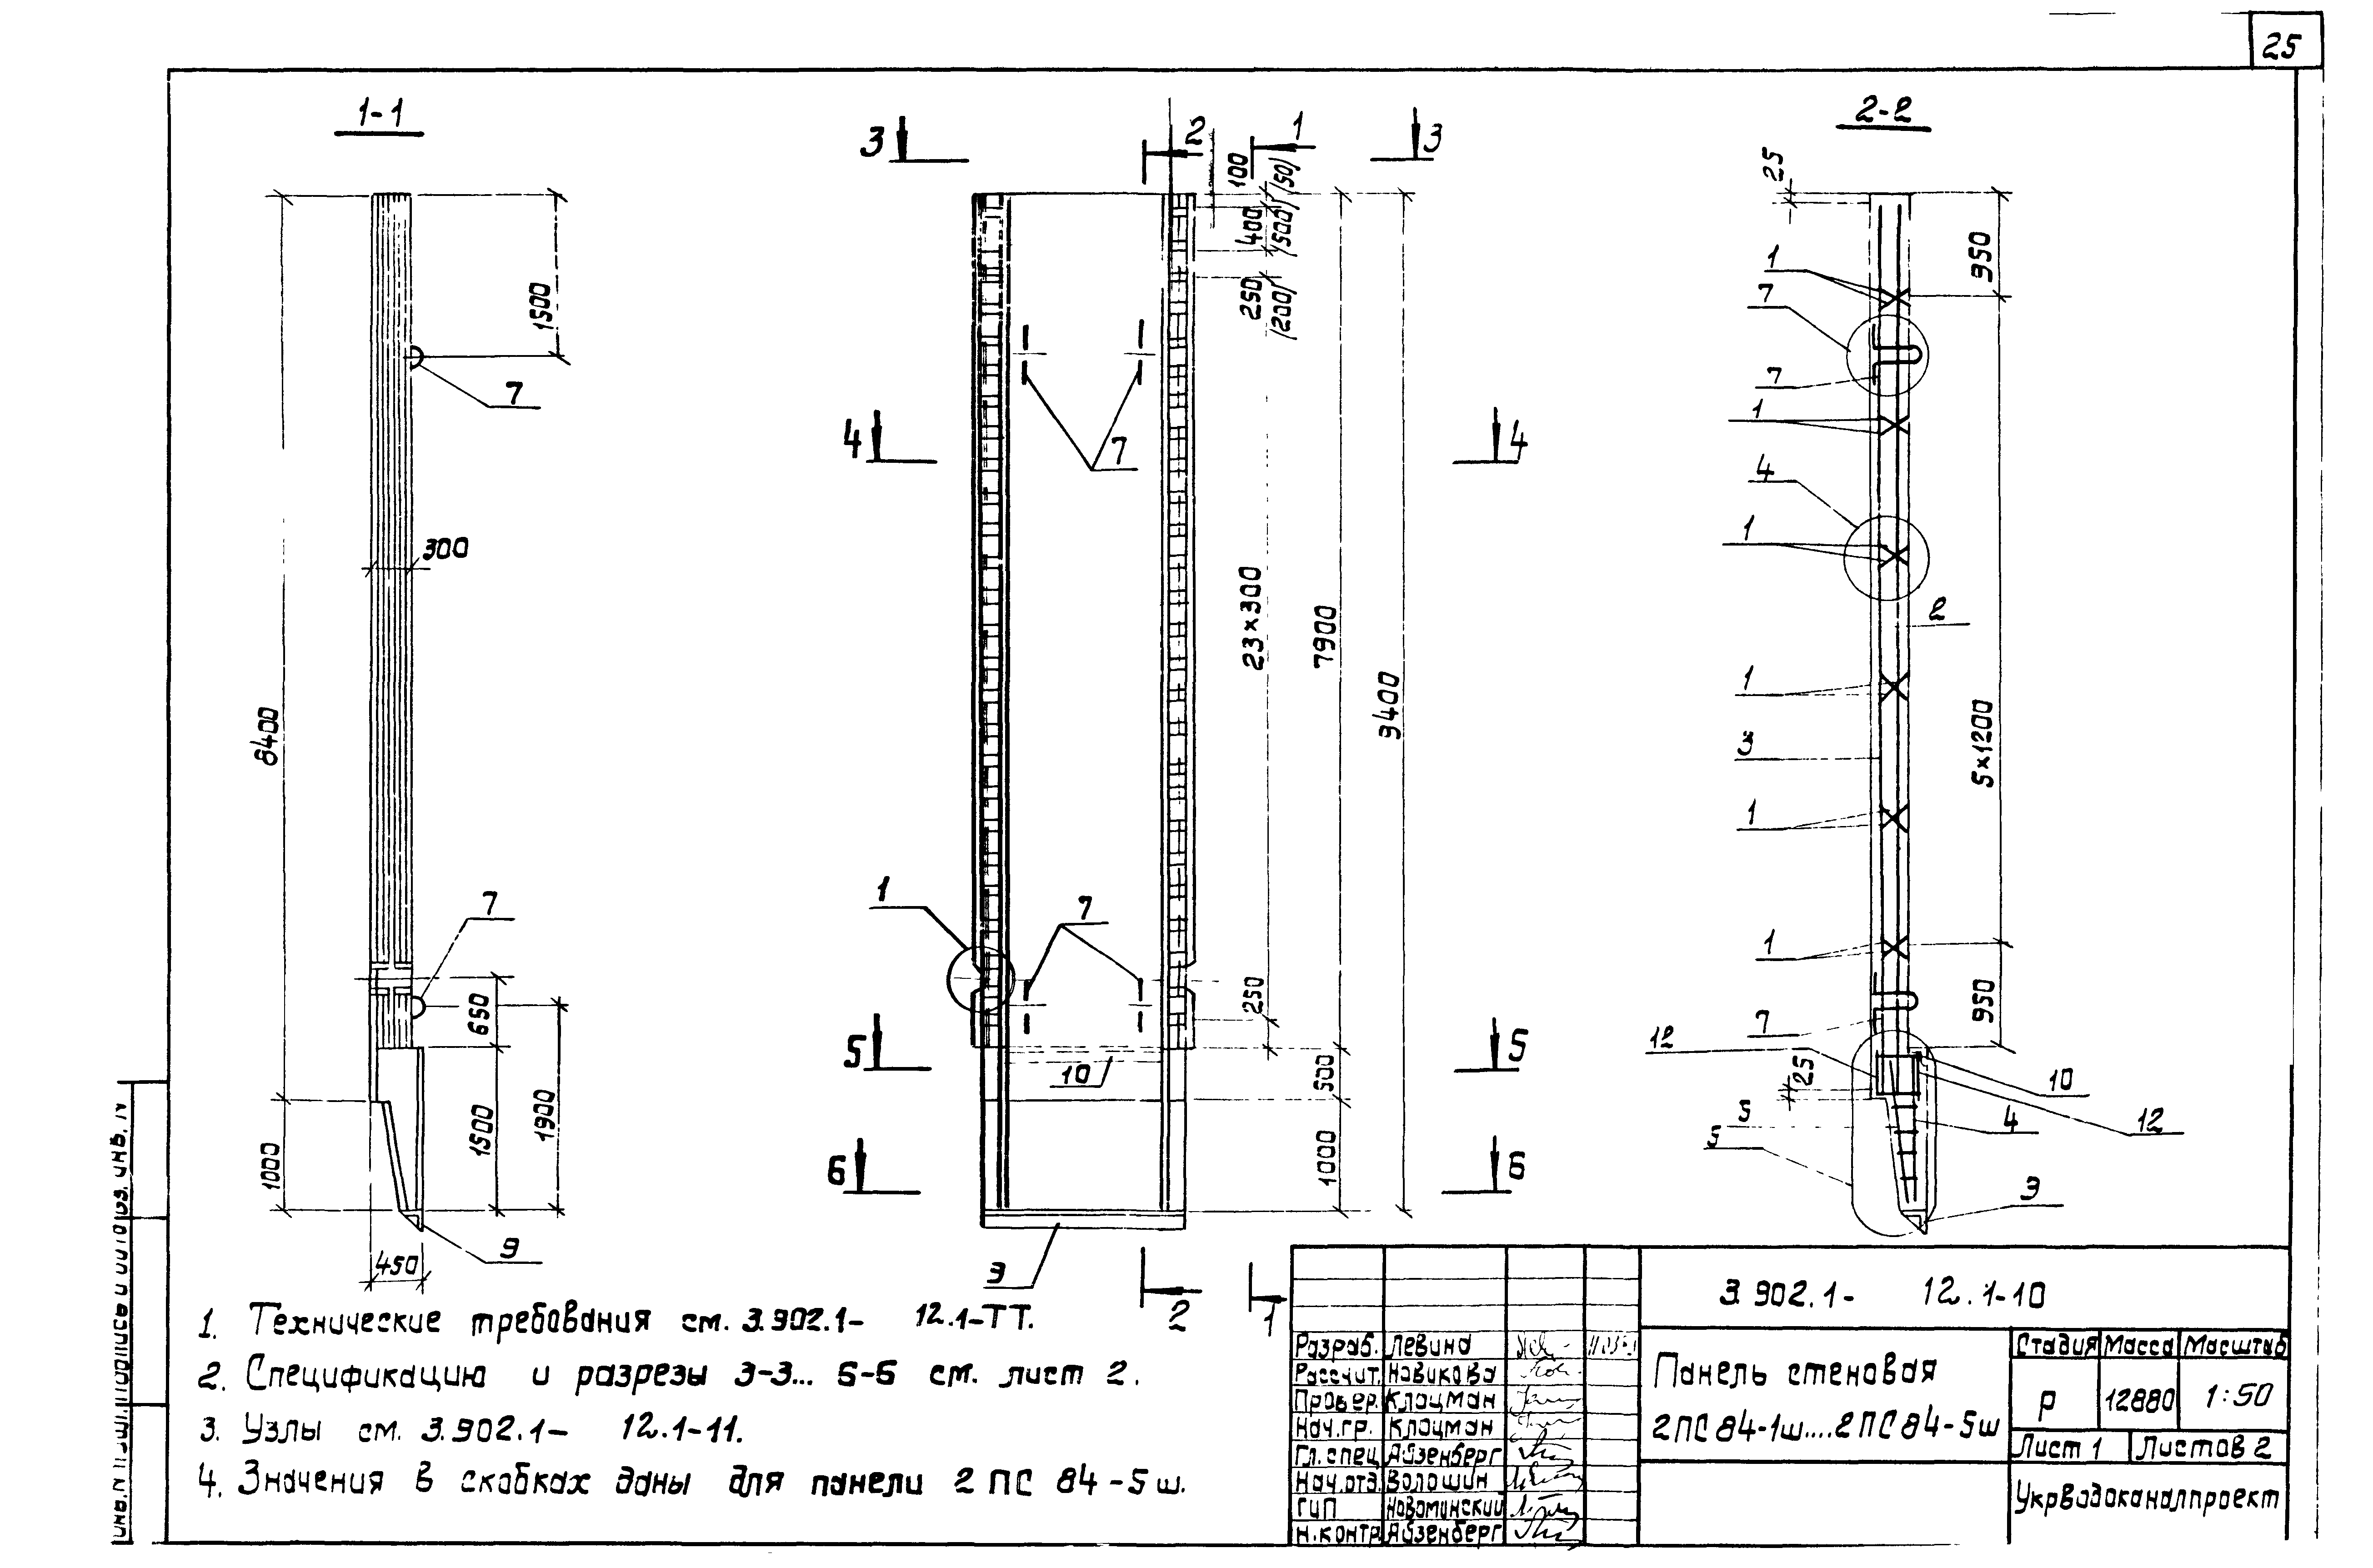 Панель стеновая 2ПС84-4ш Серия 3.902.1-12, вып.1